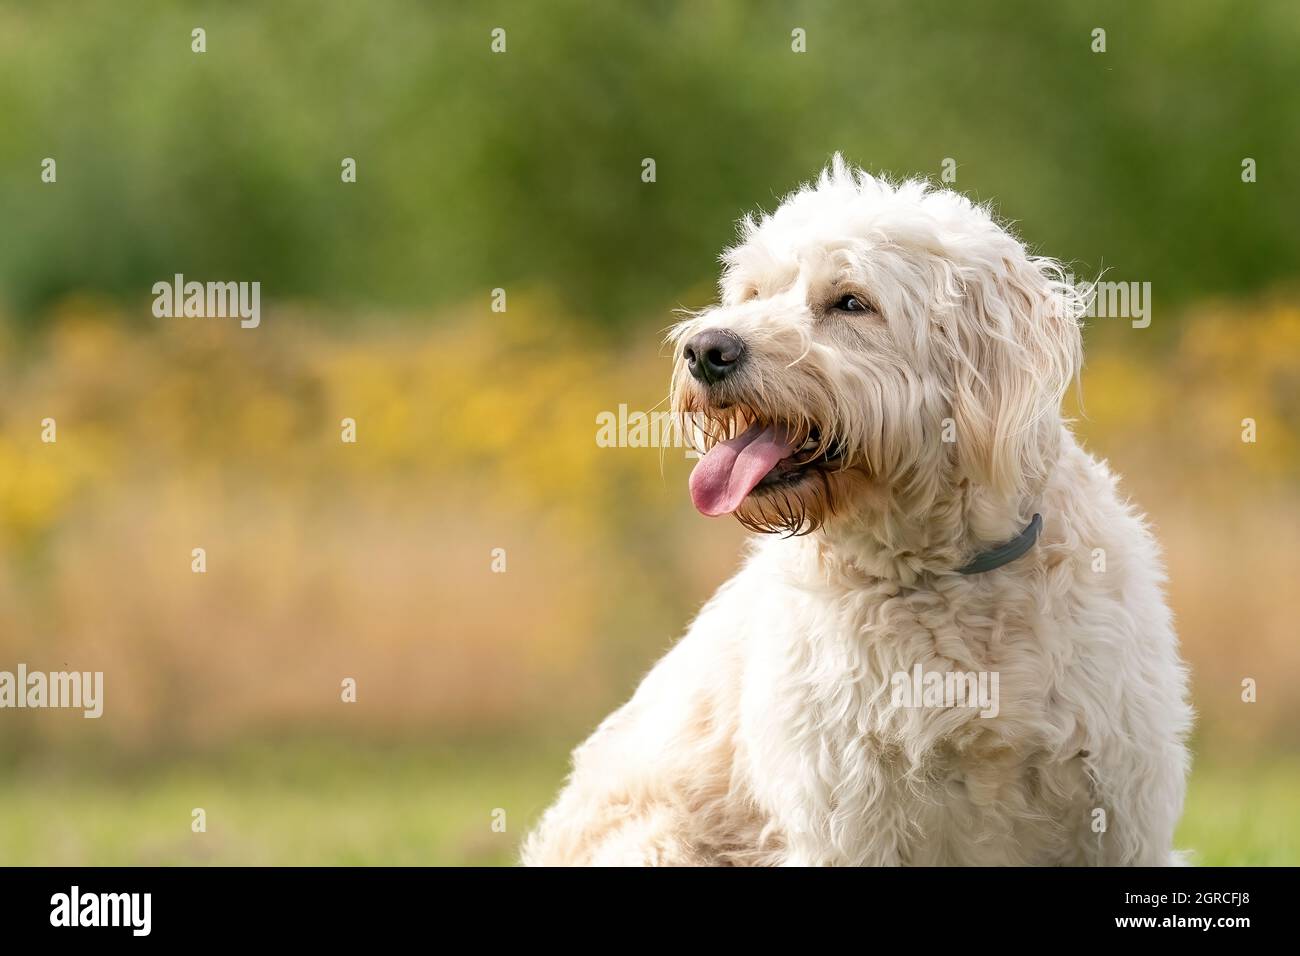 Labradoodle cabeza de perro blanco, el perro se sienta en la hierba, flores  amarillas y cañas en el fondo. El perro blanco con pelo rizado está sentado  al sol Fotografía de stock -